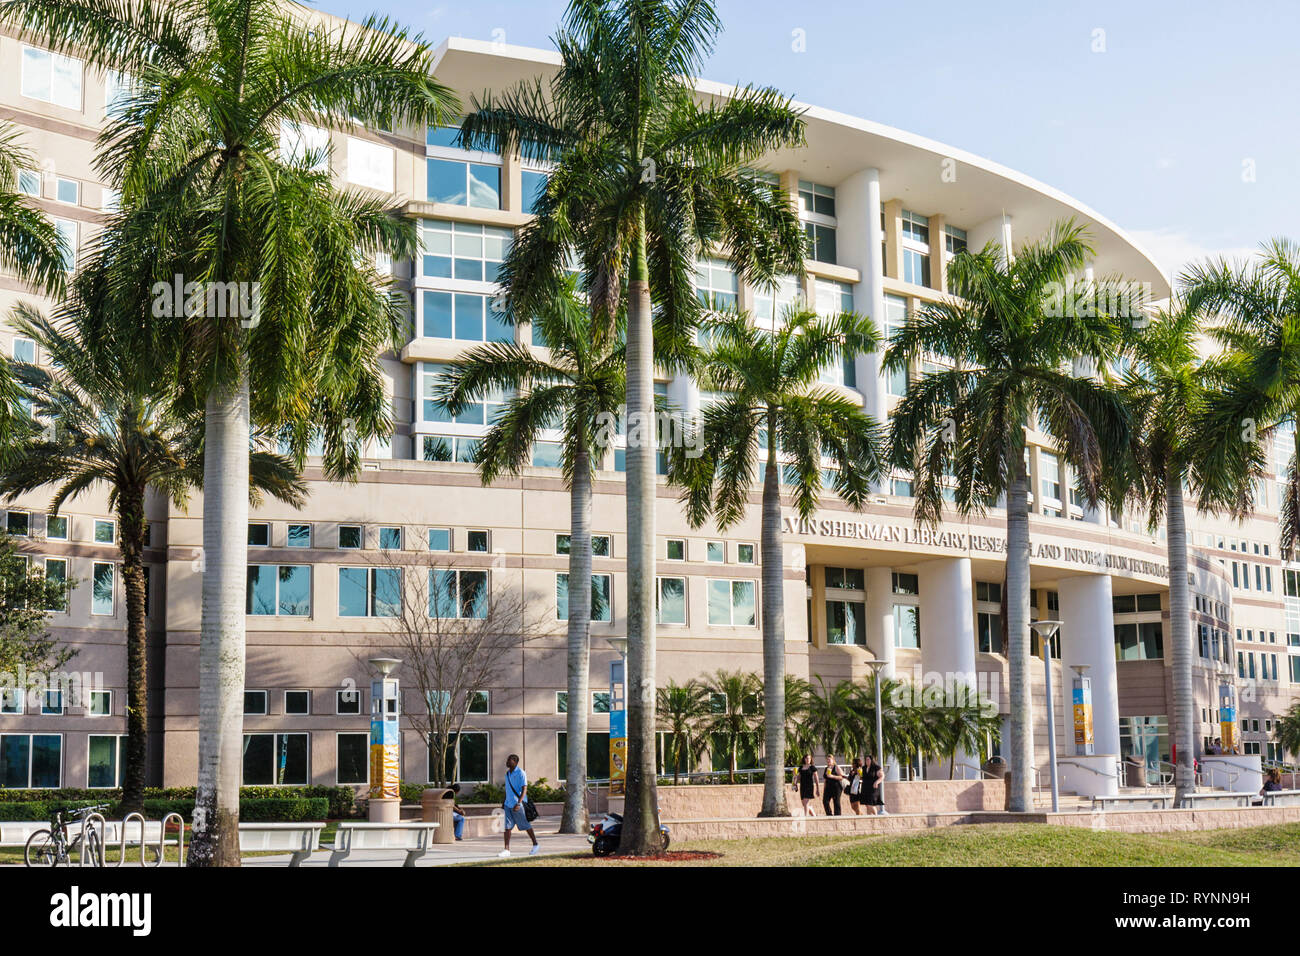 Florida Davie, Nova Southeastern University, Alvin Sherman Library, Campus, Hochschulbildung, Schule, Studenten Bildung Schüler Schüler, Gebäude, Palm Stockfoto